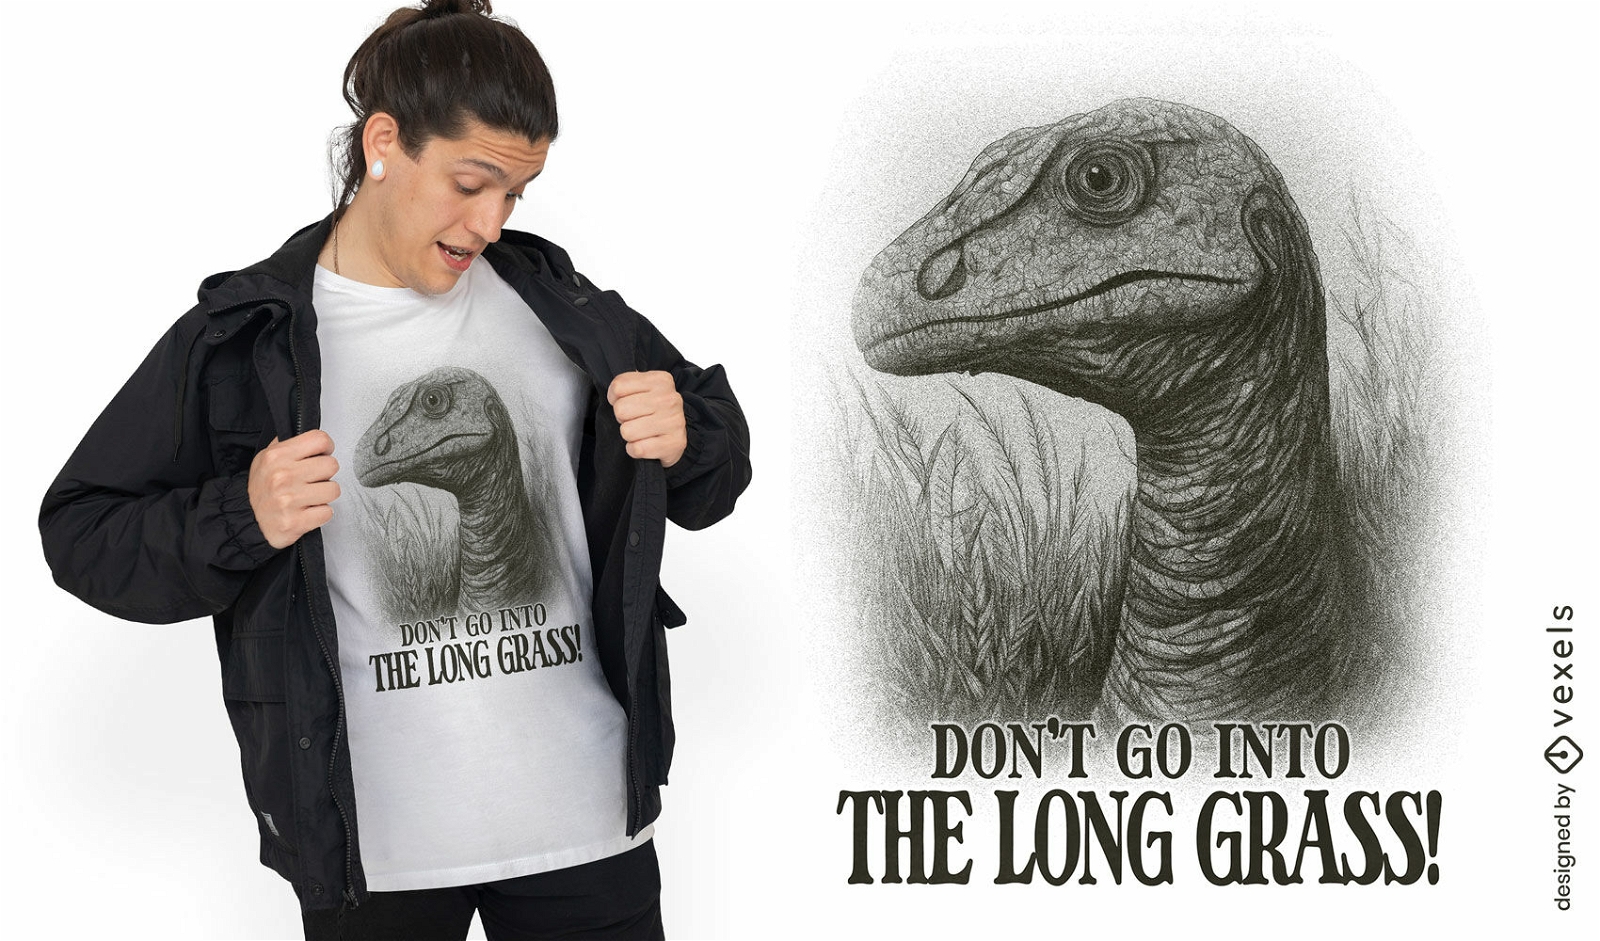 Dise?o de camiseta de advertencia de dinosaurio.